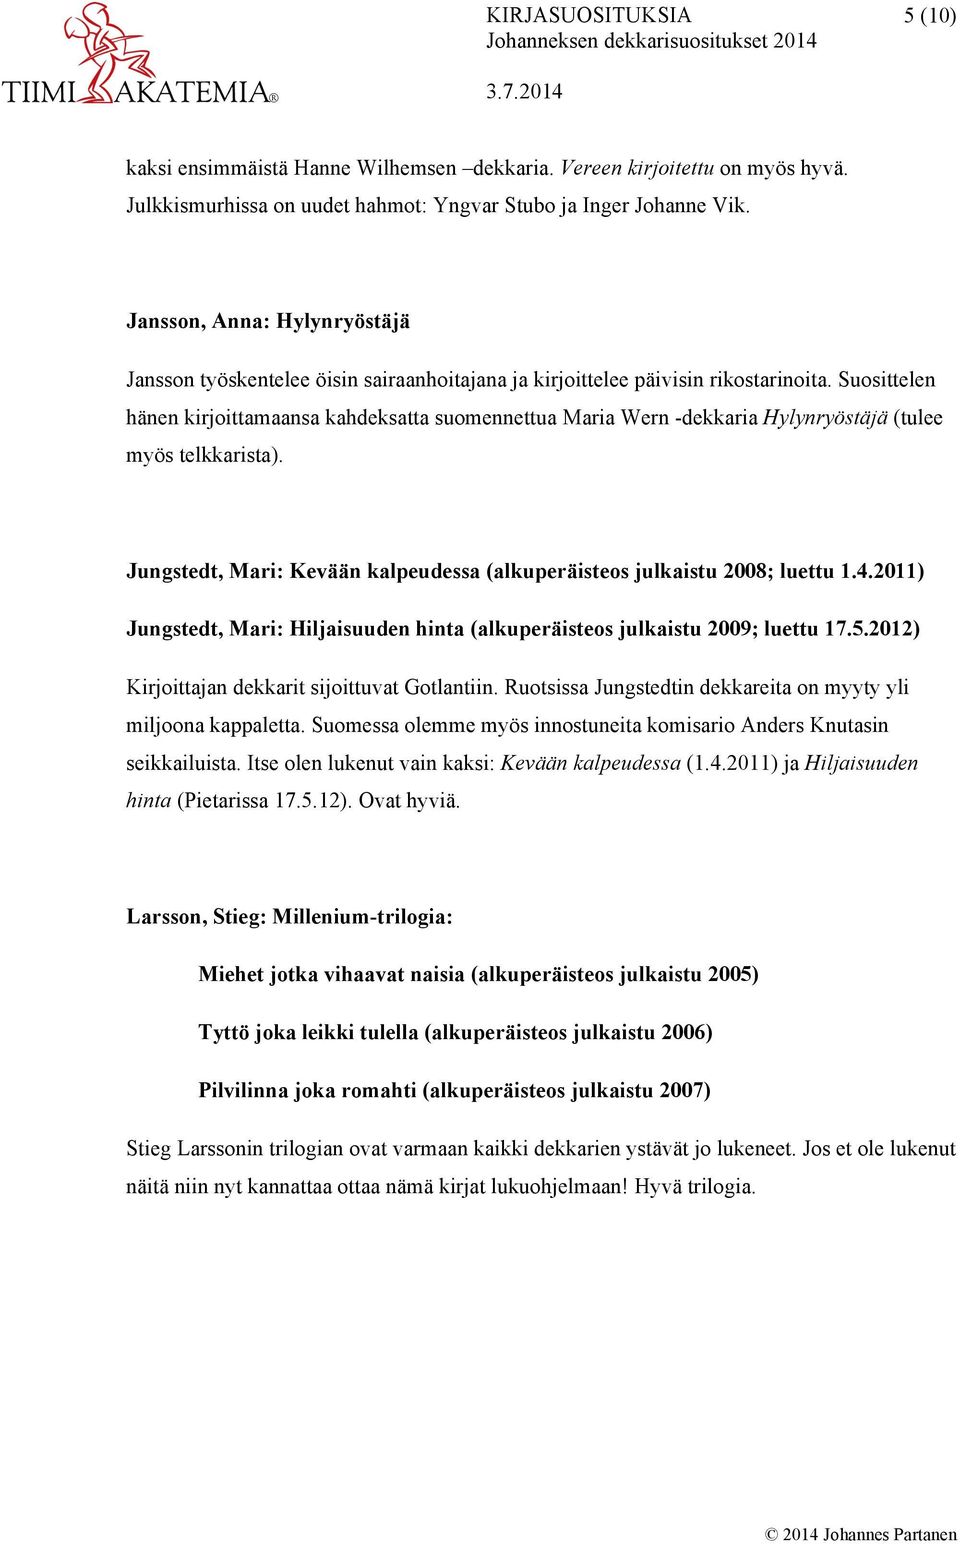 Suosittelen hänen kirjoittamaansa kahdeksatta suomennettua Maria Wern -dekkaria Hylynryöstäjä (tulee myös telkkarista). Jungstedt, Mari: Kevään kalpeudessa (alkuperäisteos julkaistu 2008; luettu 1.4.